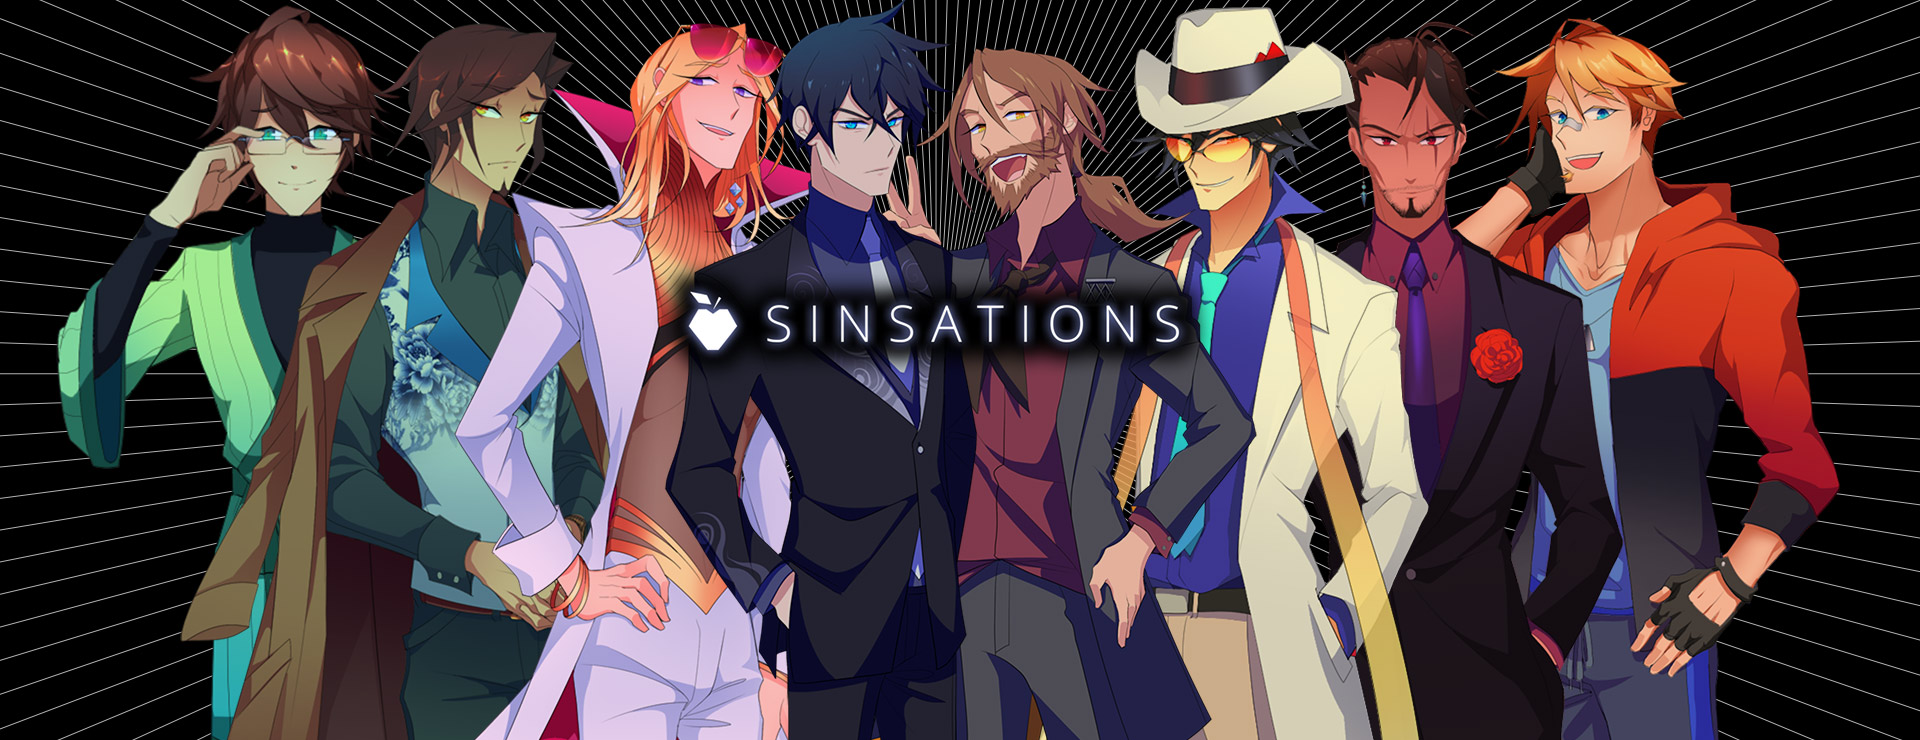 Sinsations - ビジュアルノベル ゲーム